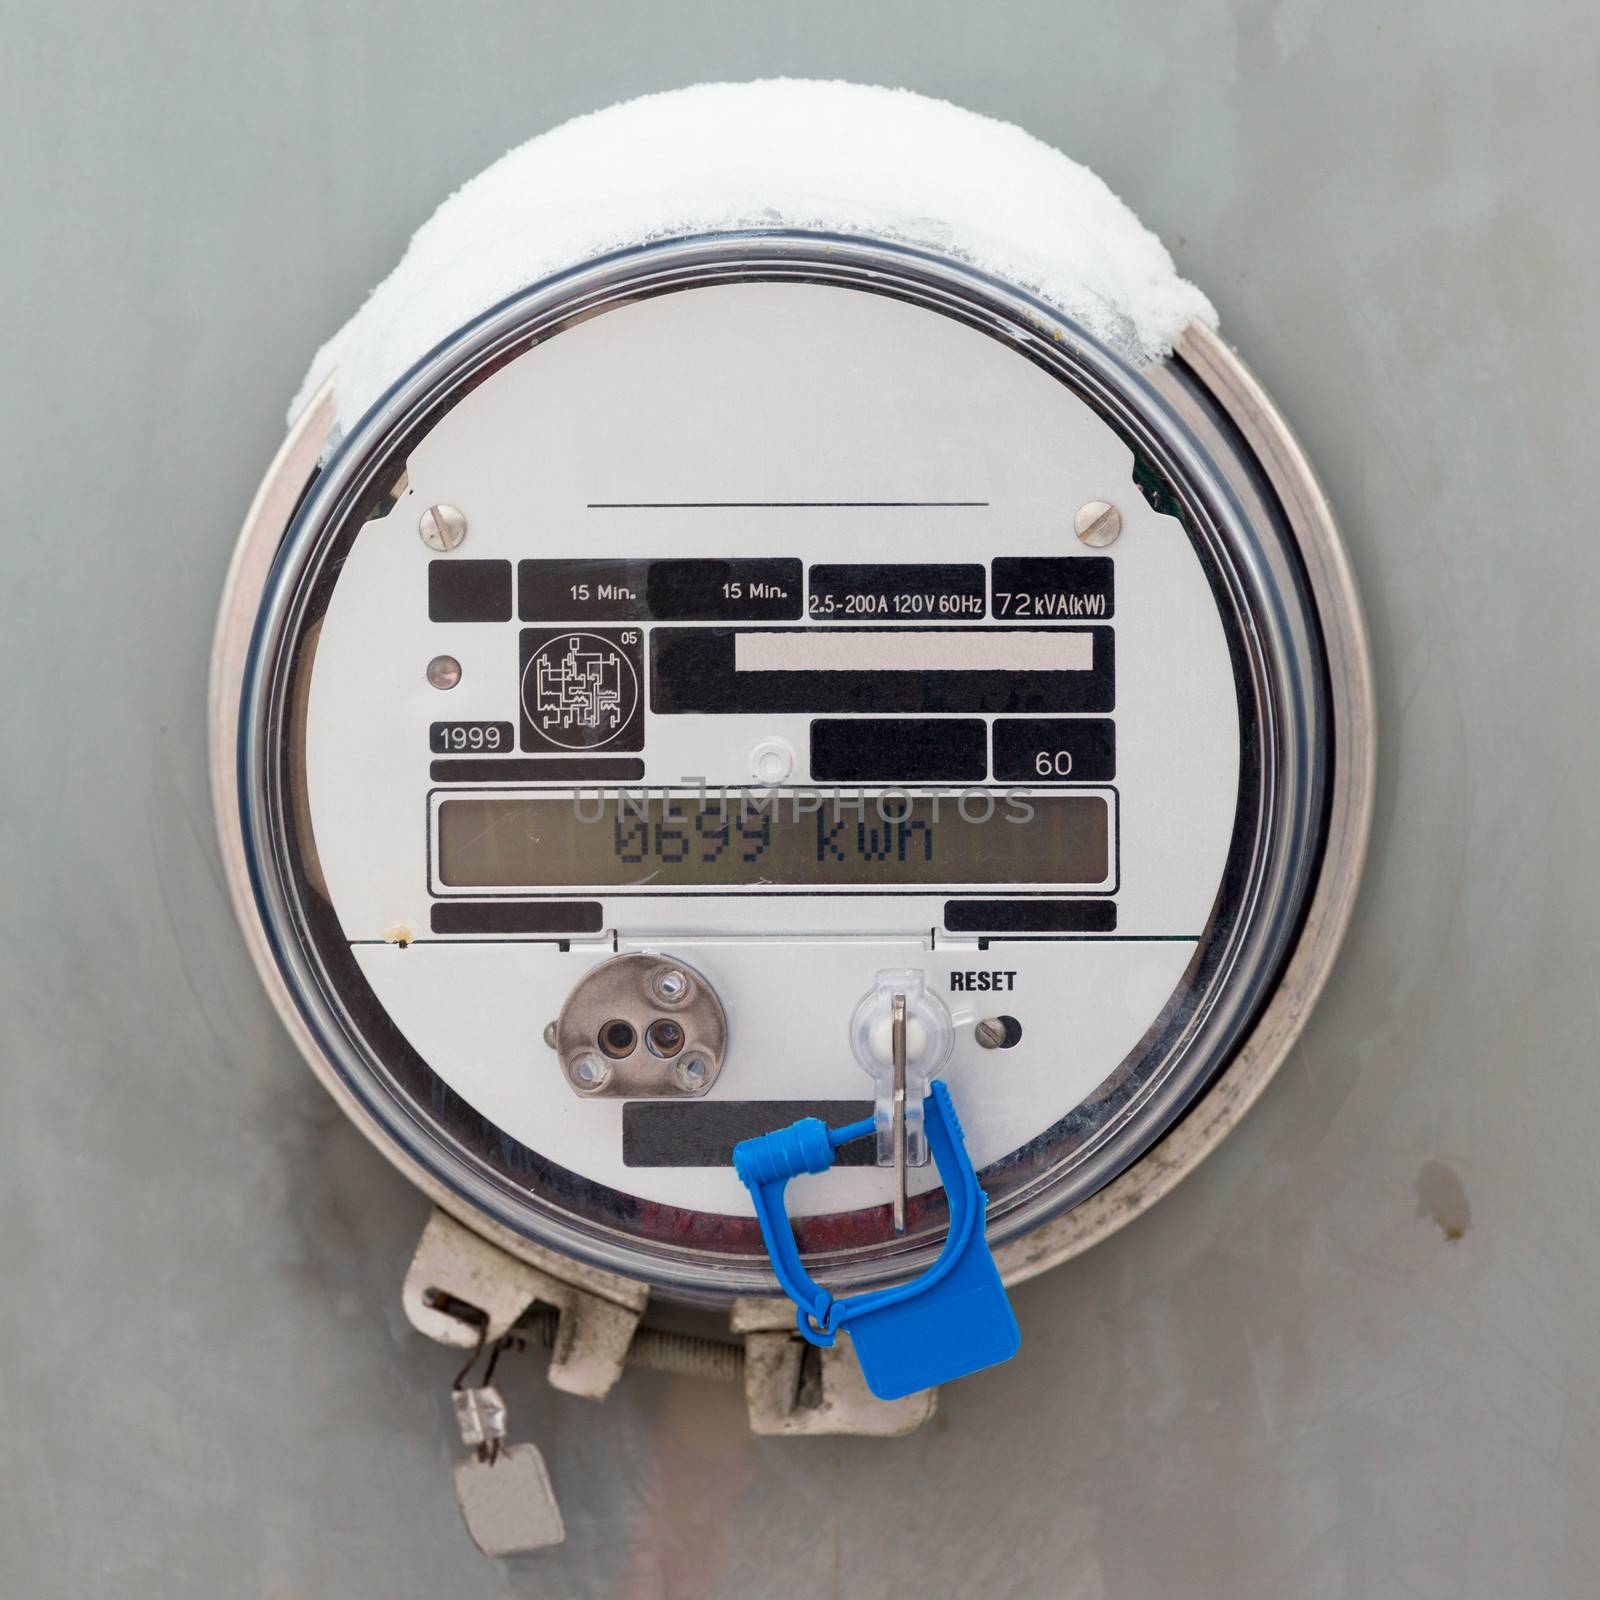 Smart grid residential digital power supply meter by PiLens